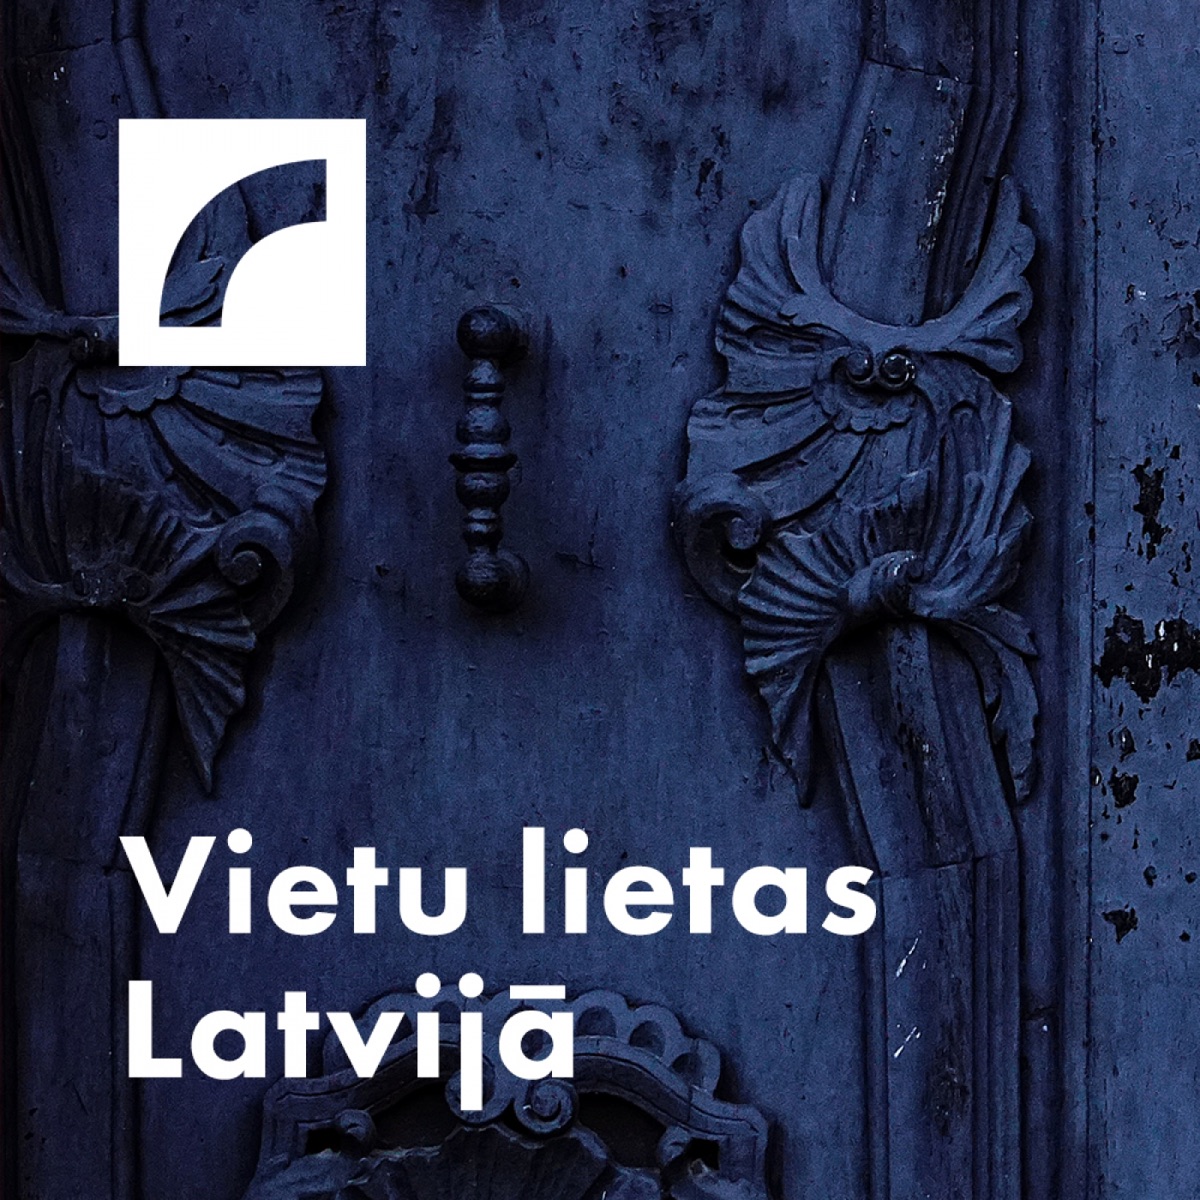 Vietu lietas Latvijā – Podcast – Podtail